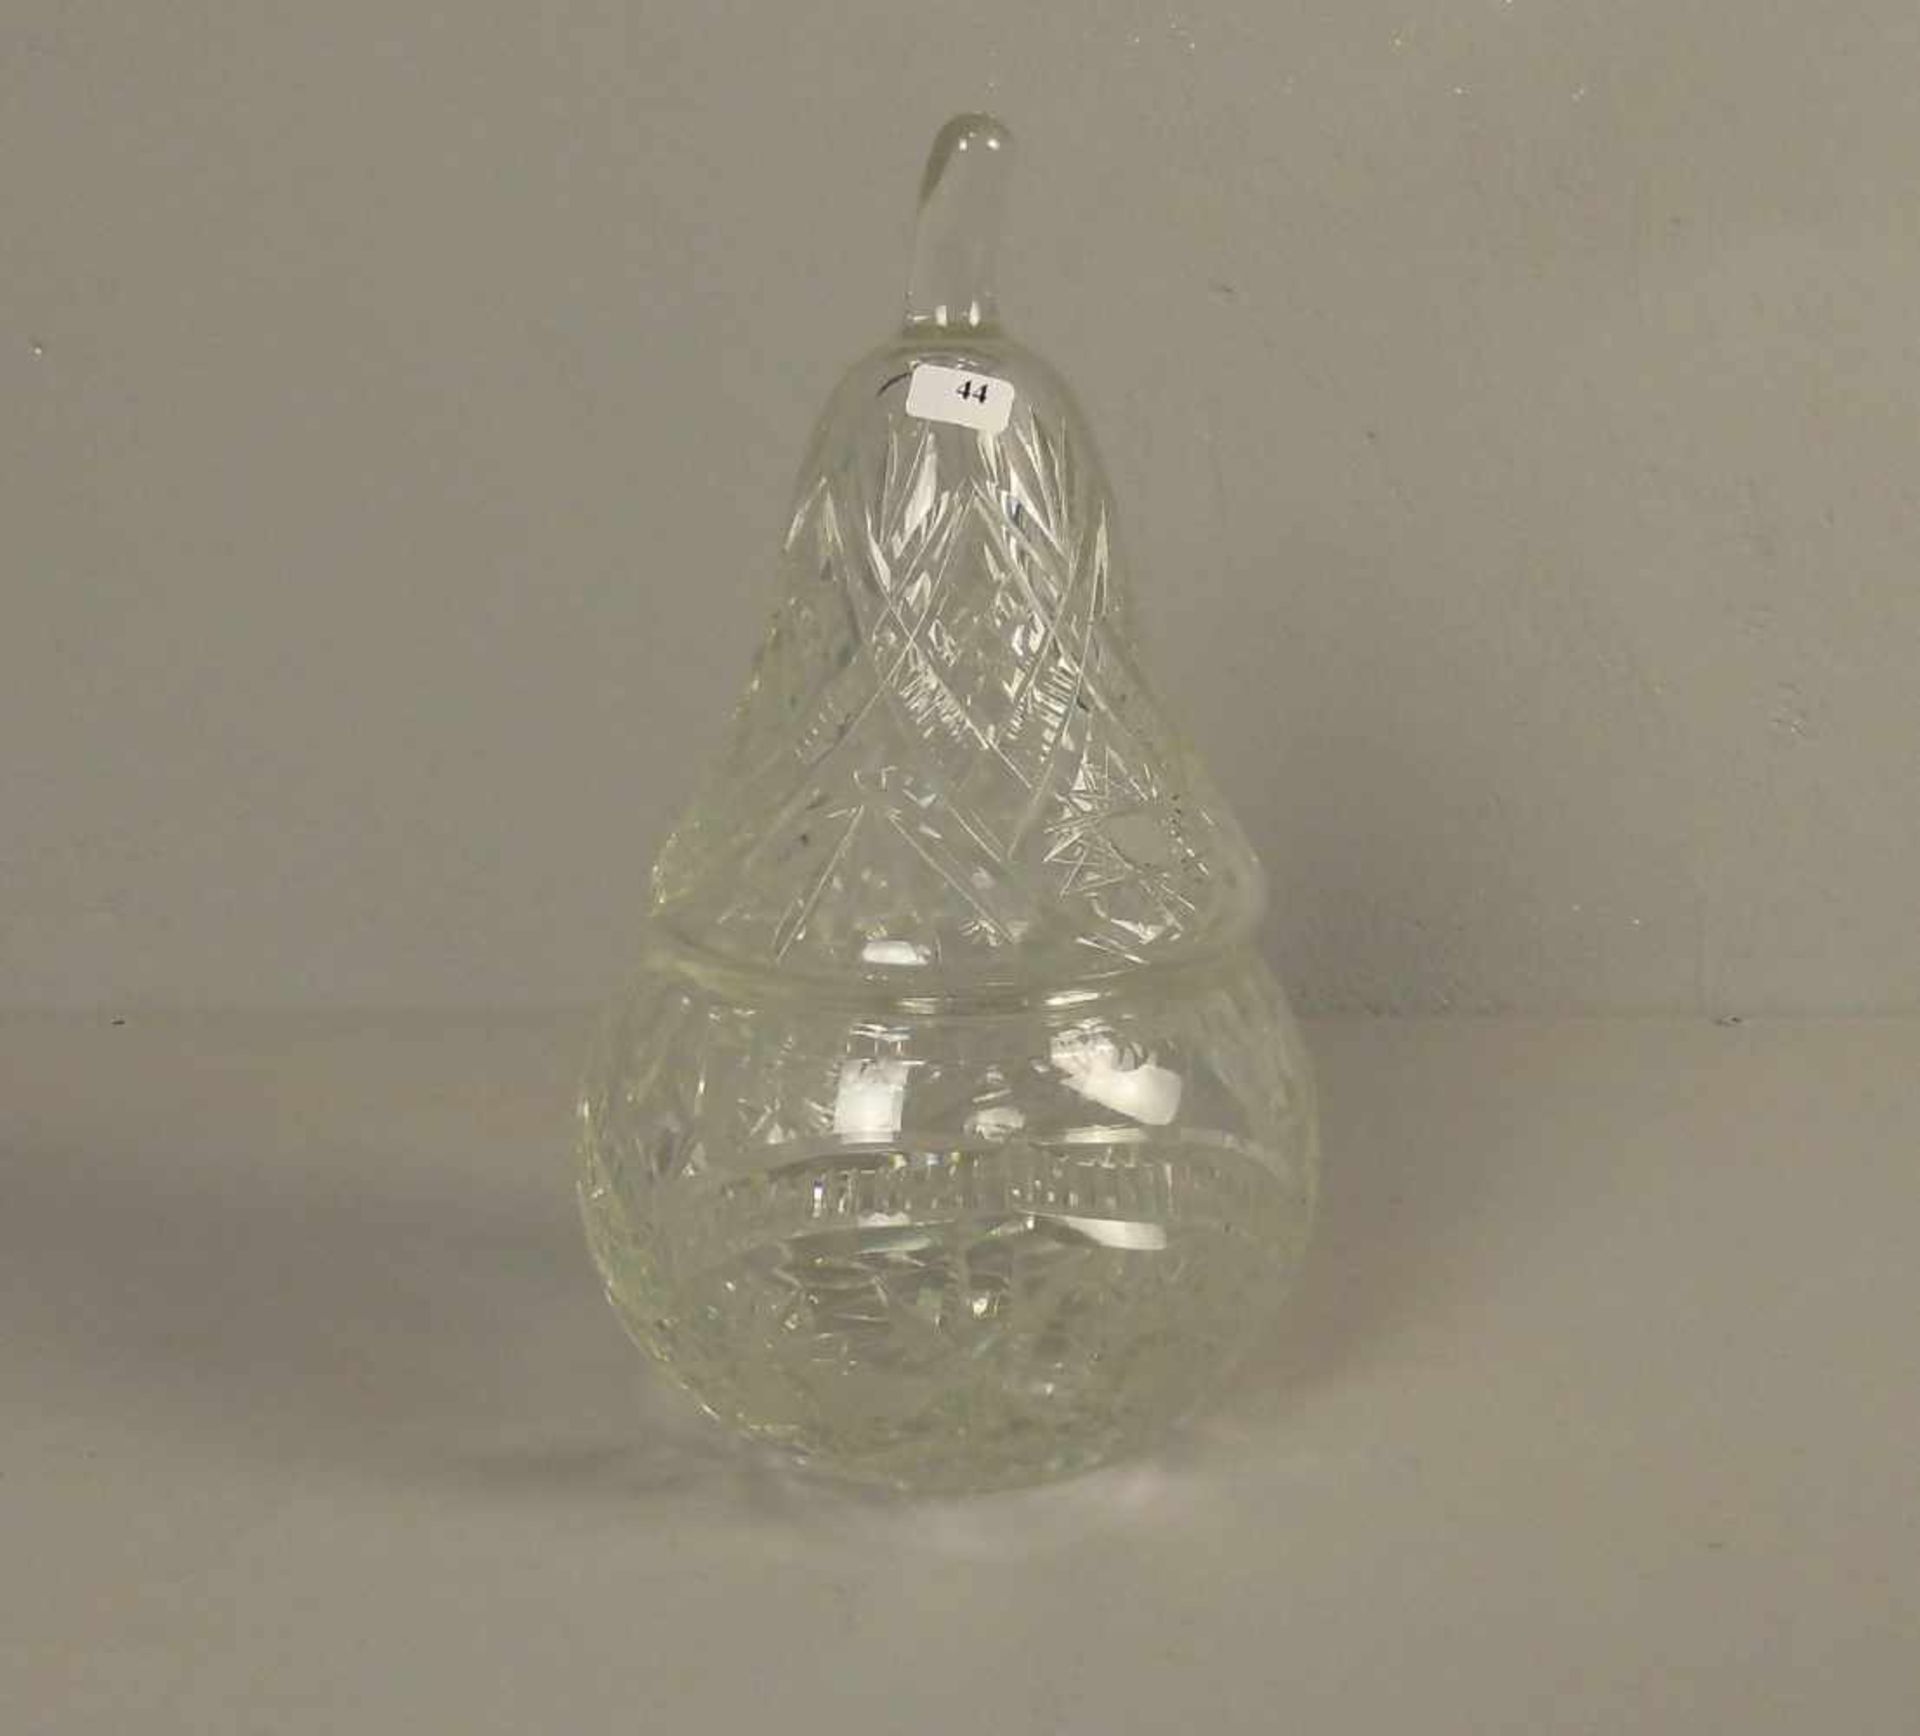 BONBONNIERE IN BIRNENFORM / DECKELDOSE / glas box, Bleikristall, 20. Jh.; Deckeldose in Form einer